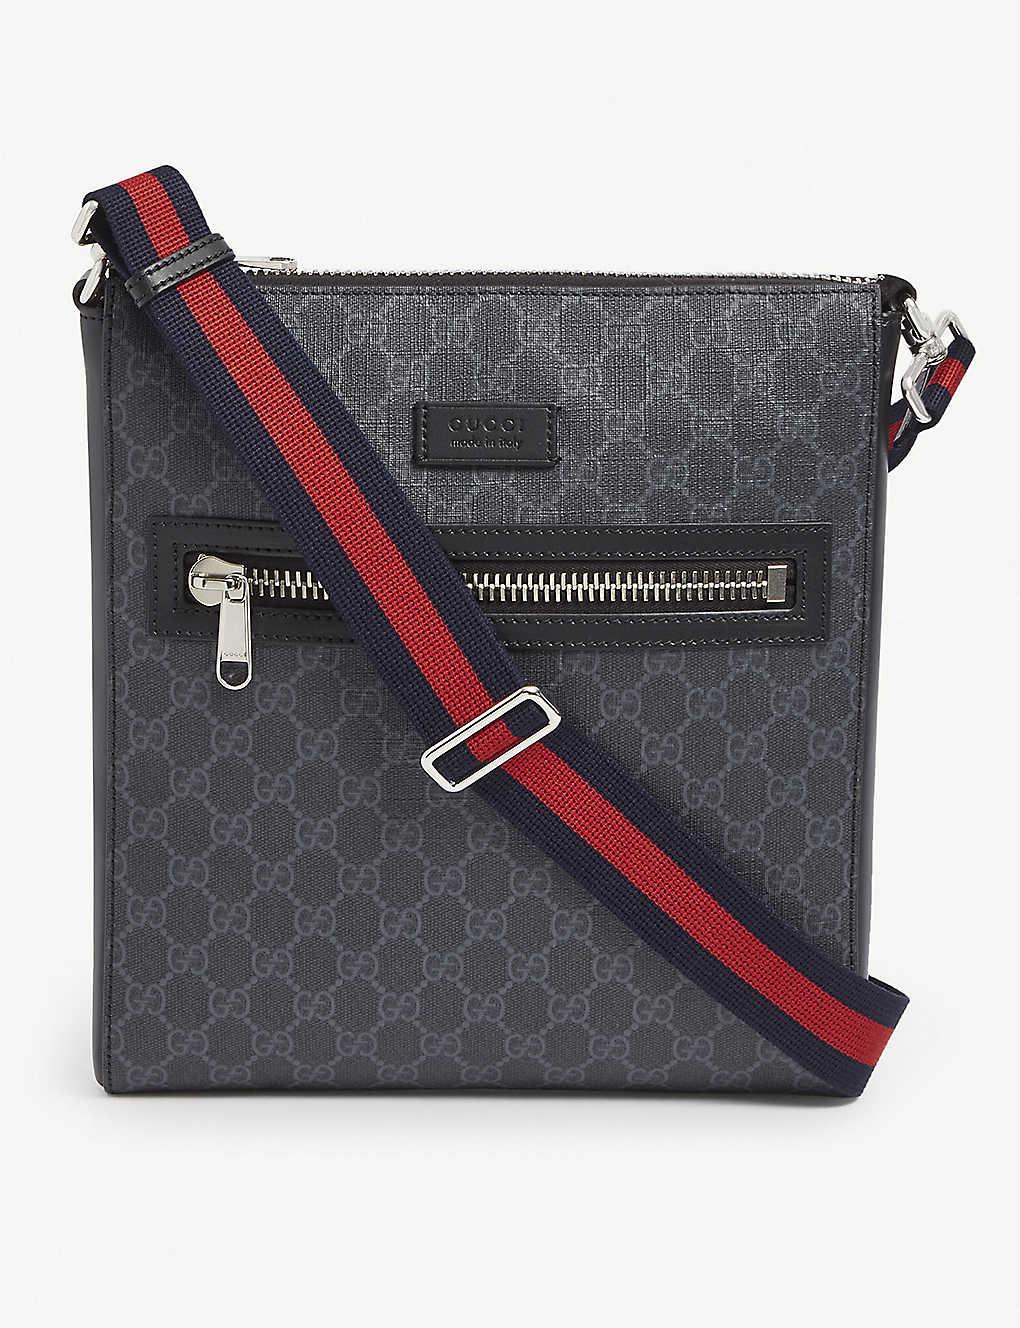 Gucci Supreme Logo Canvas Flight Bag in Black for Men - Lyst